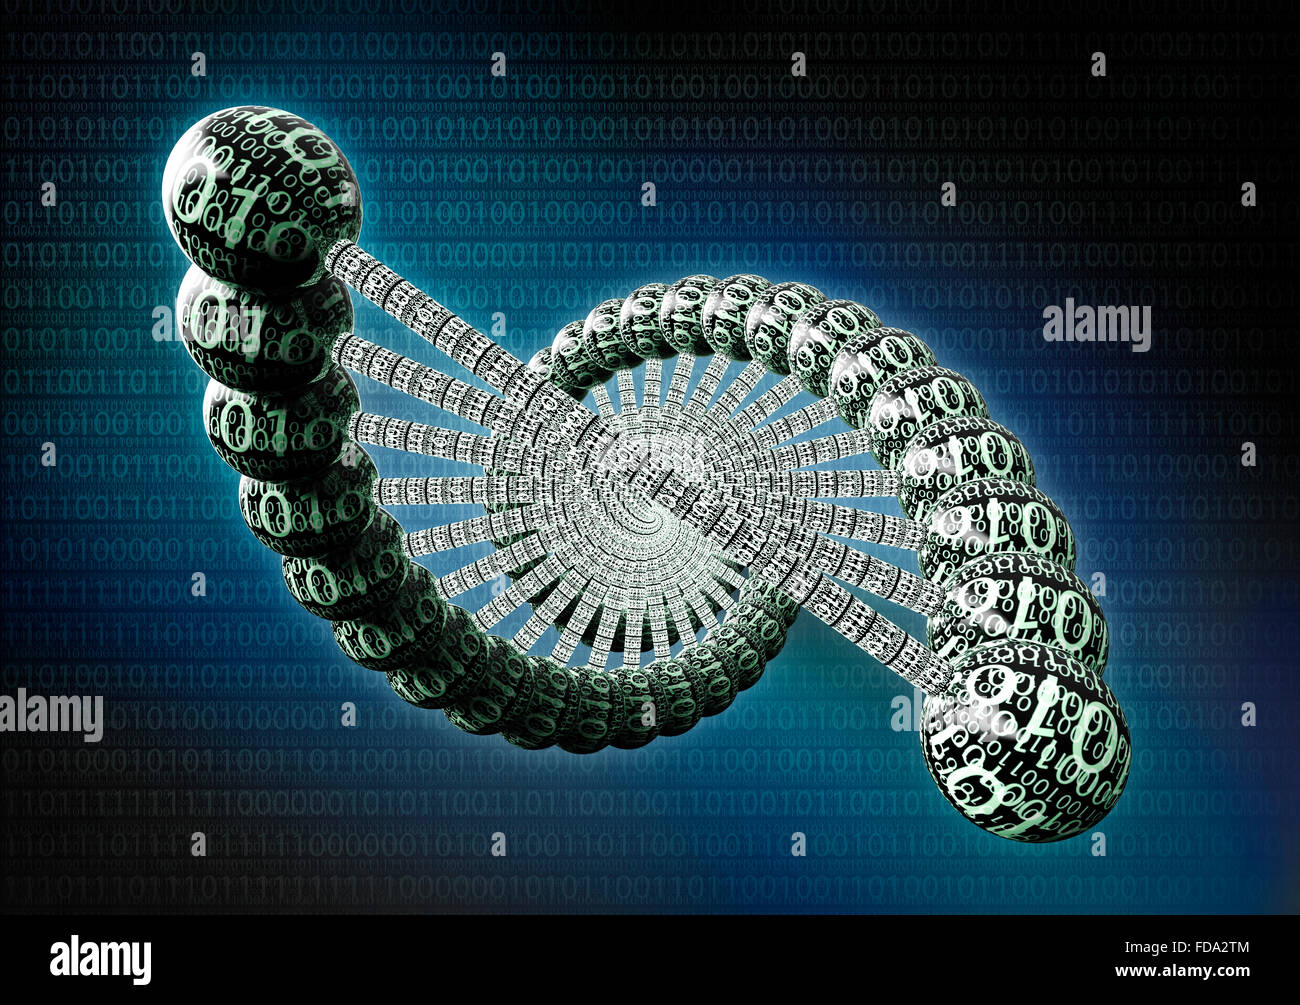 Doppel-Helix Dna aus binären Computercode gemacht Stockfoto